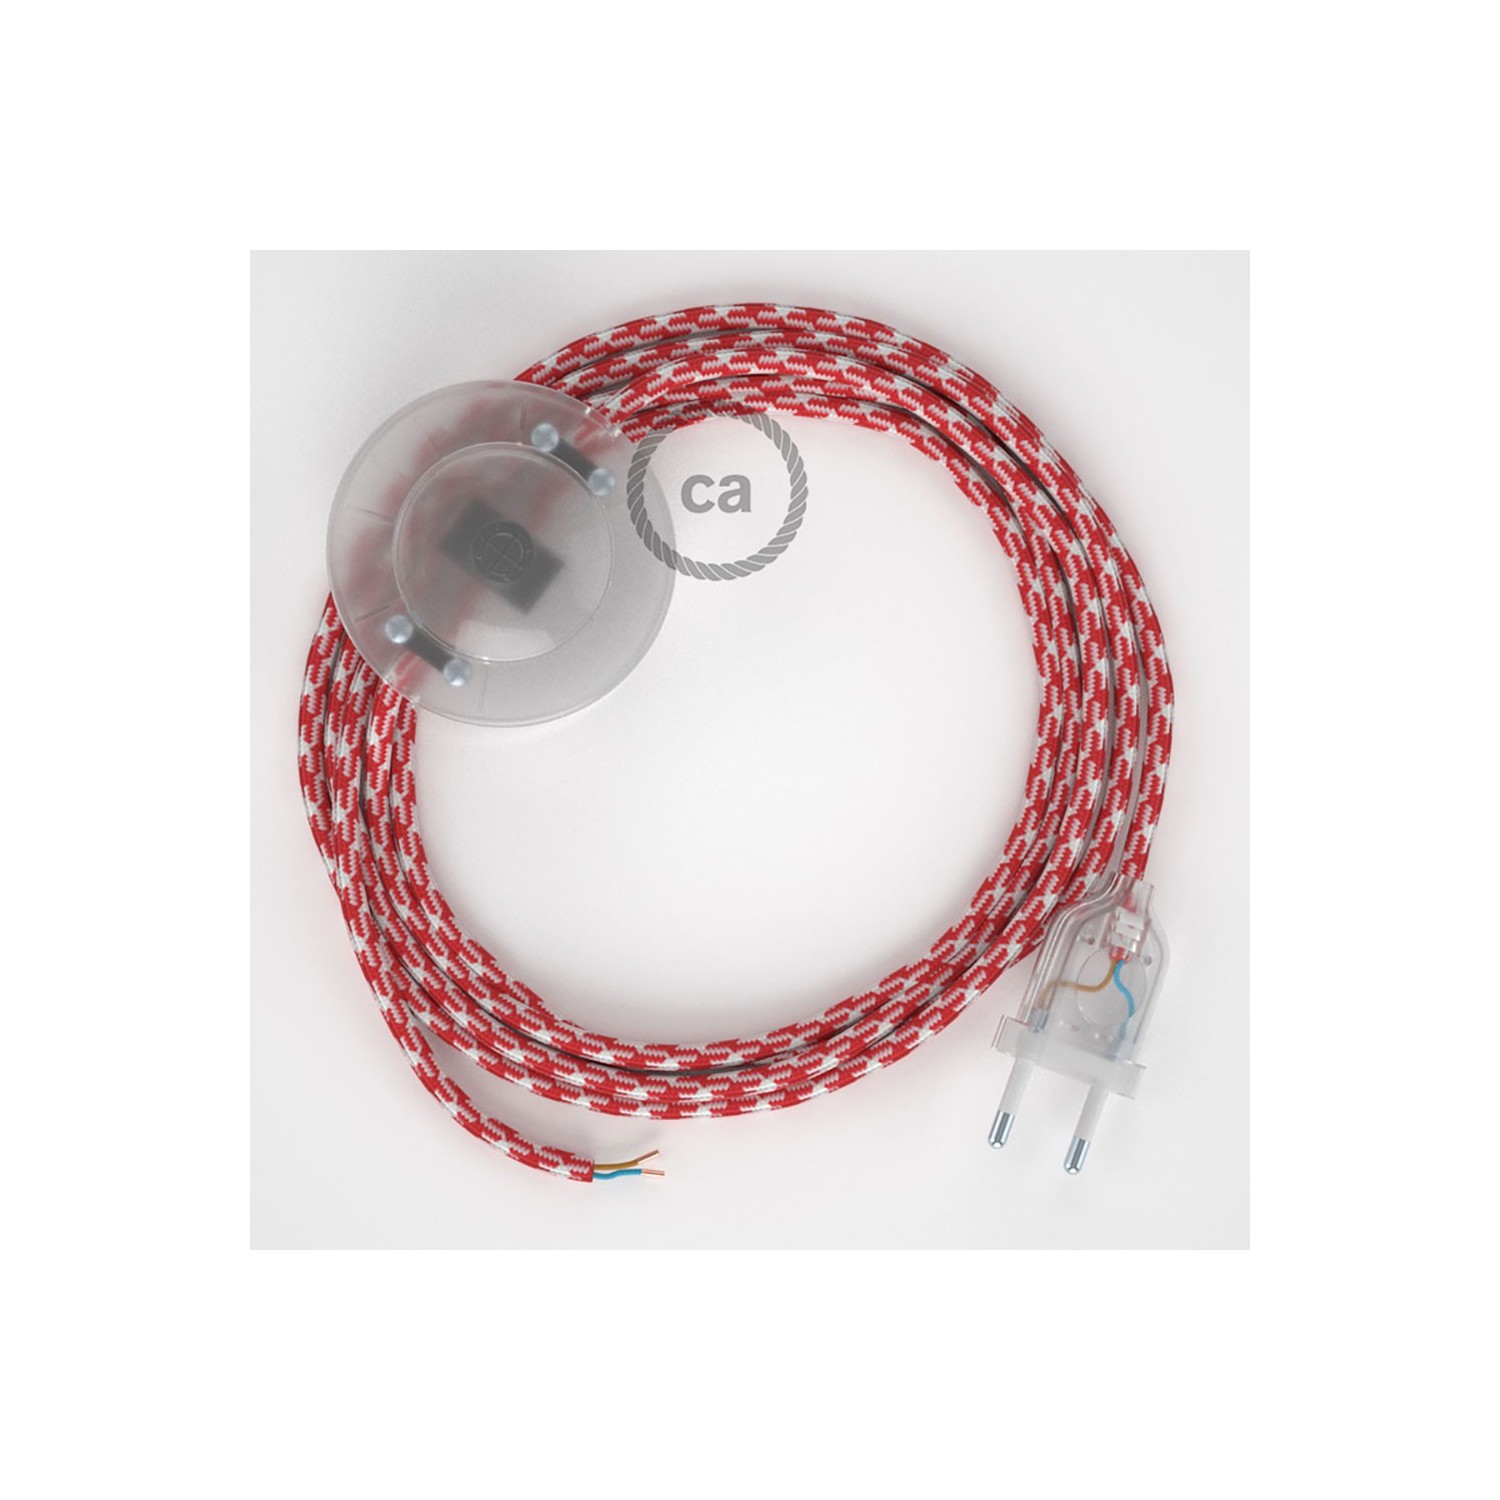 Sladdställ med fotströmbrytare, RP09 Röd/Vit Viskos 3 m. Välj färg på strömbrytare och kontakt